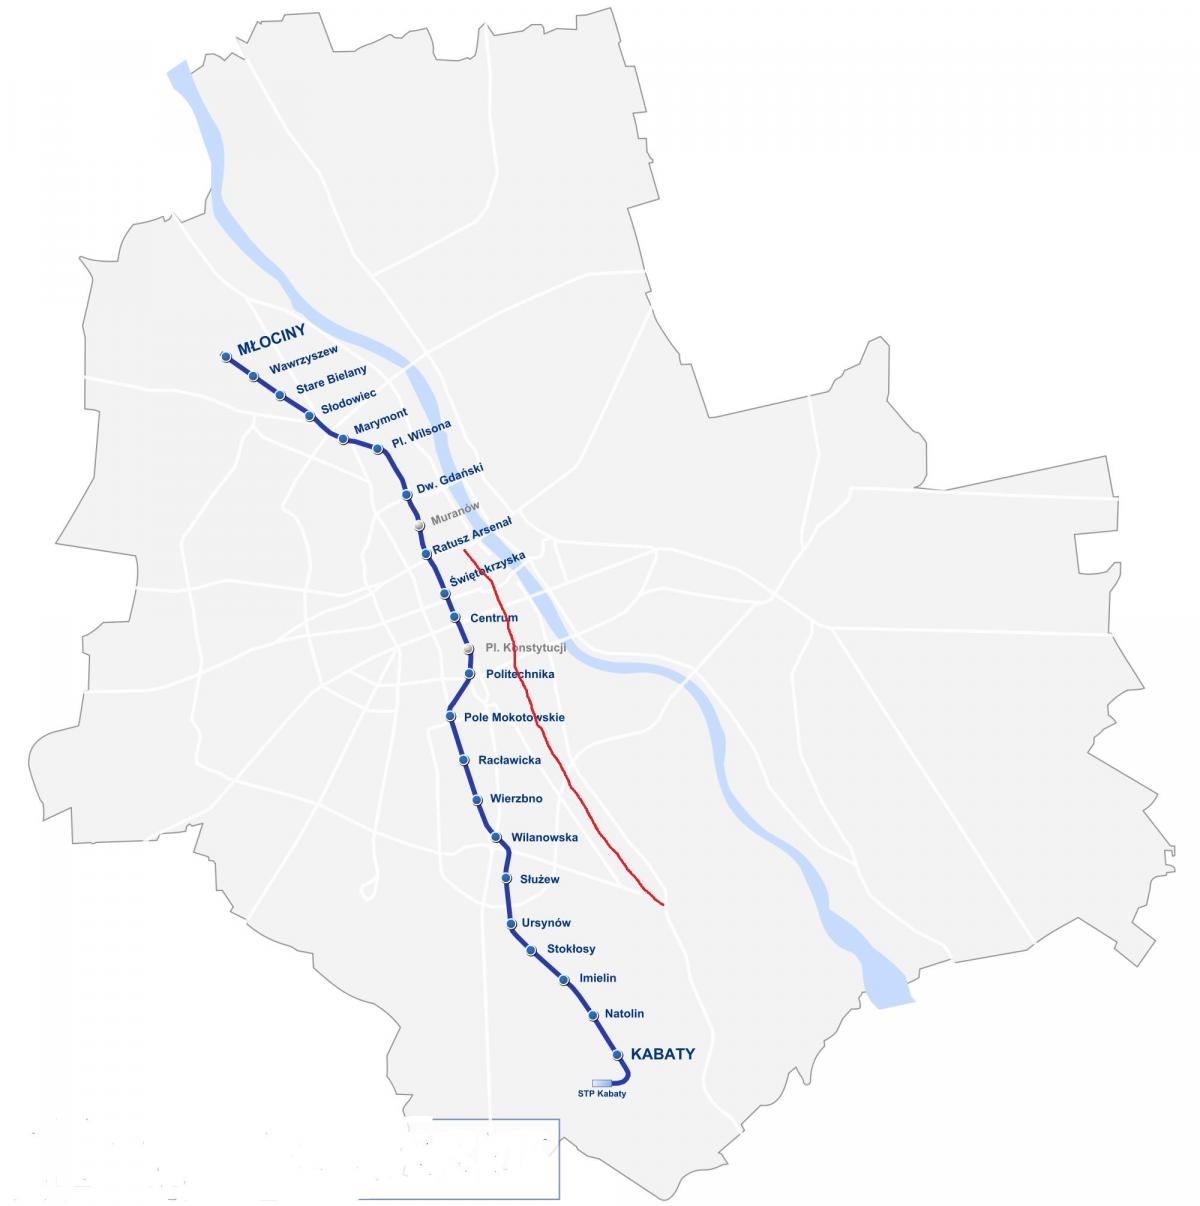 Mapa ng Warsaw royal ruta 